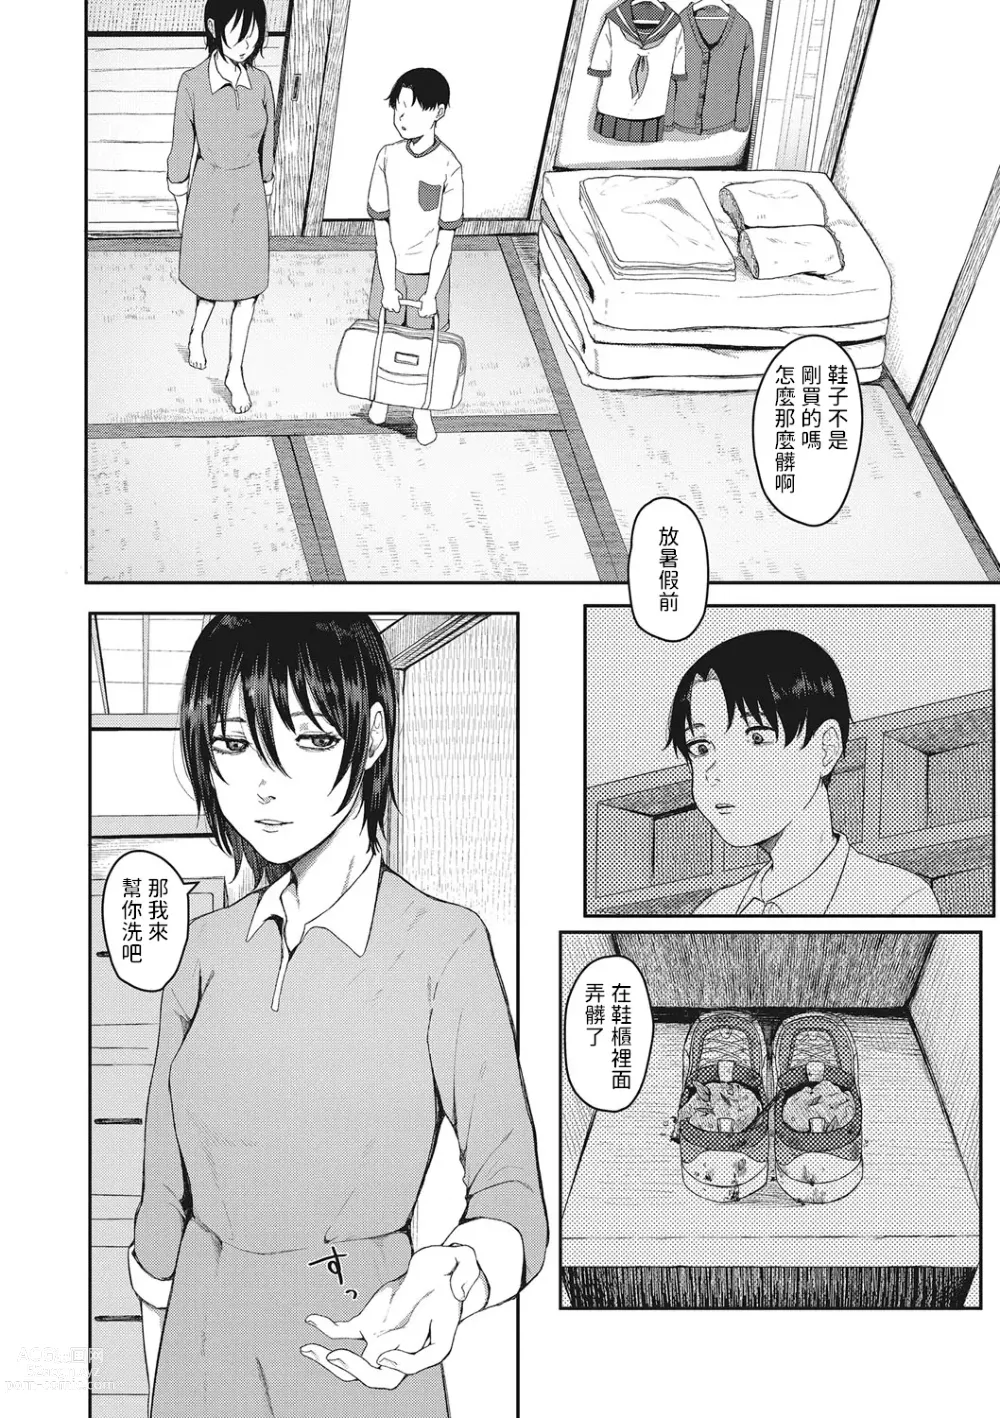 Page 2 of manga Tsuisou no Aza